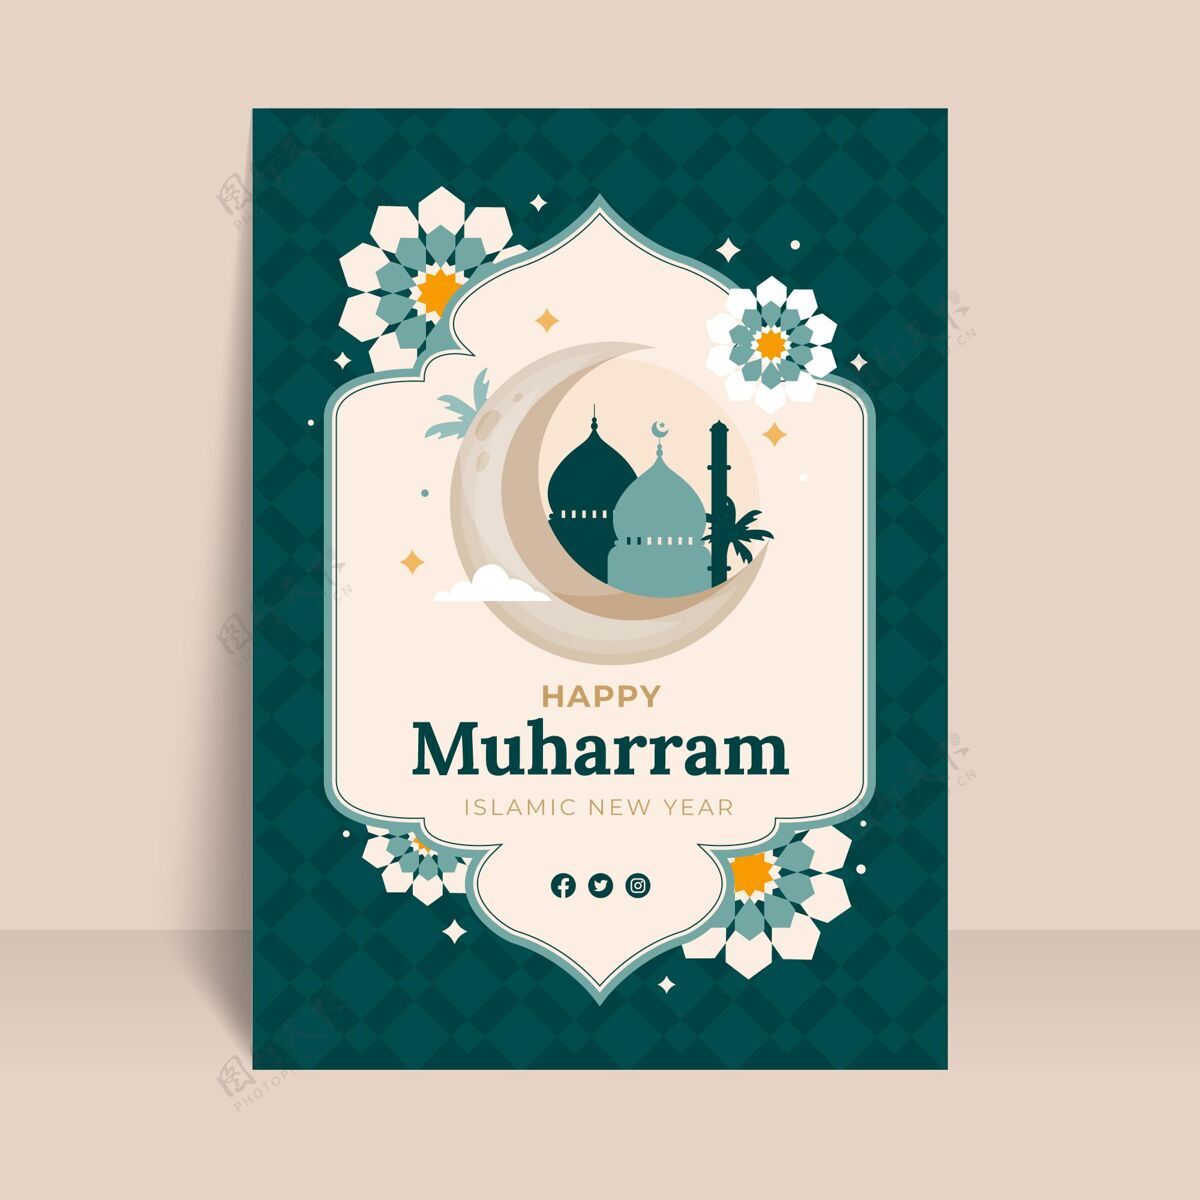 平面设计平面muharram垂直海报模板海报模板穆哈拉姆活动